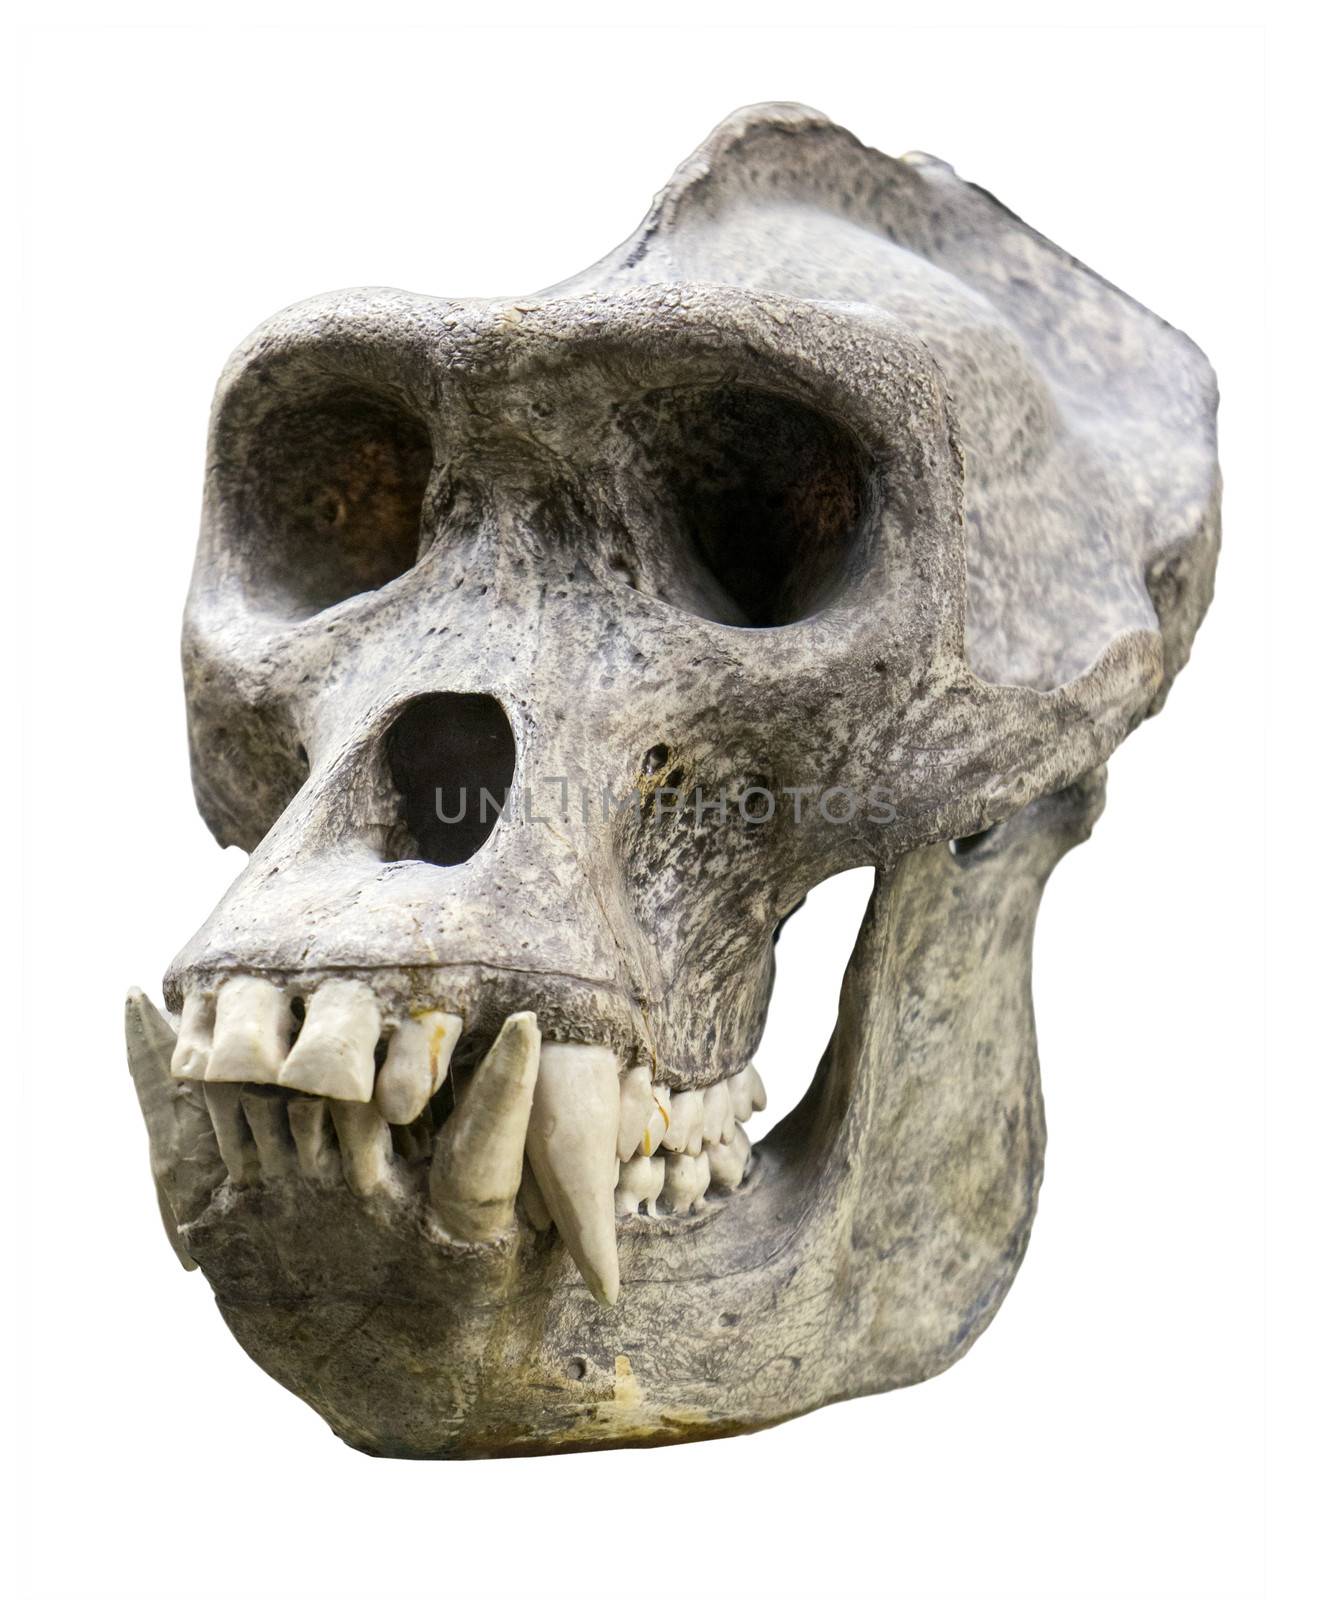 Gorilla skull by gilmanshin